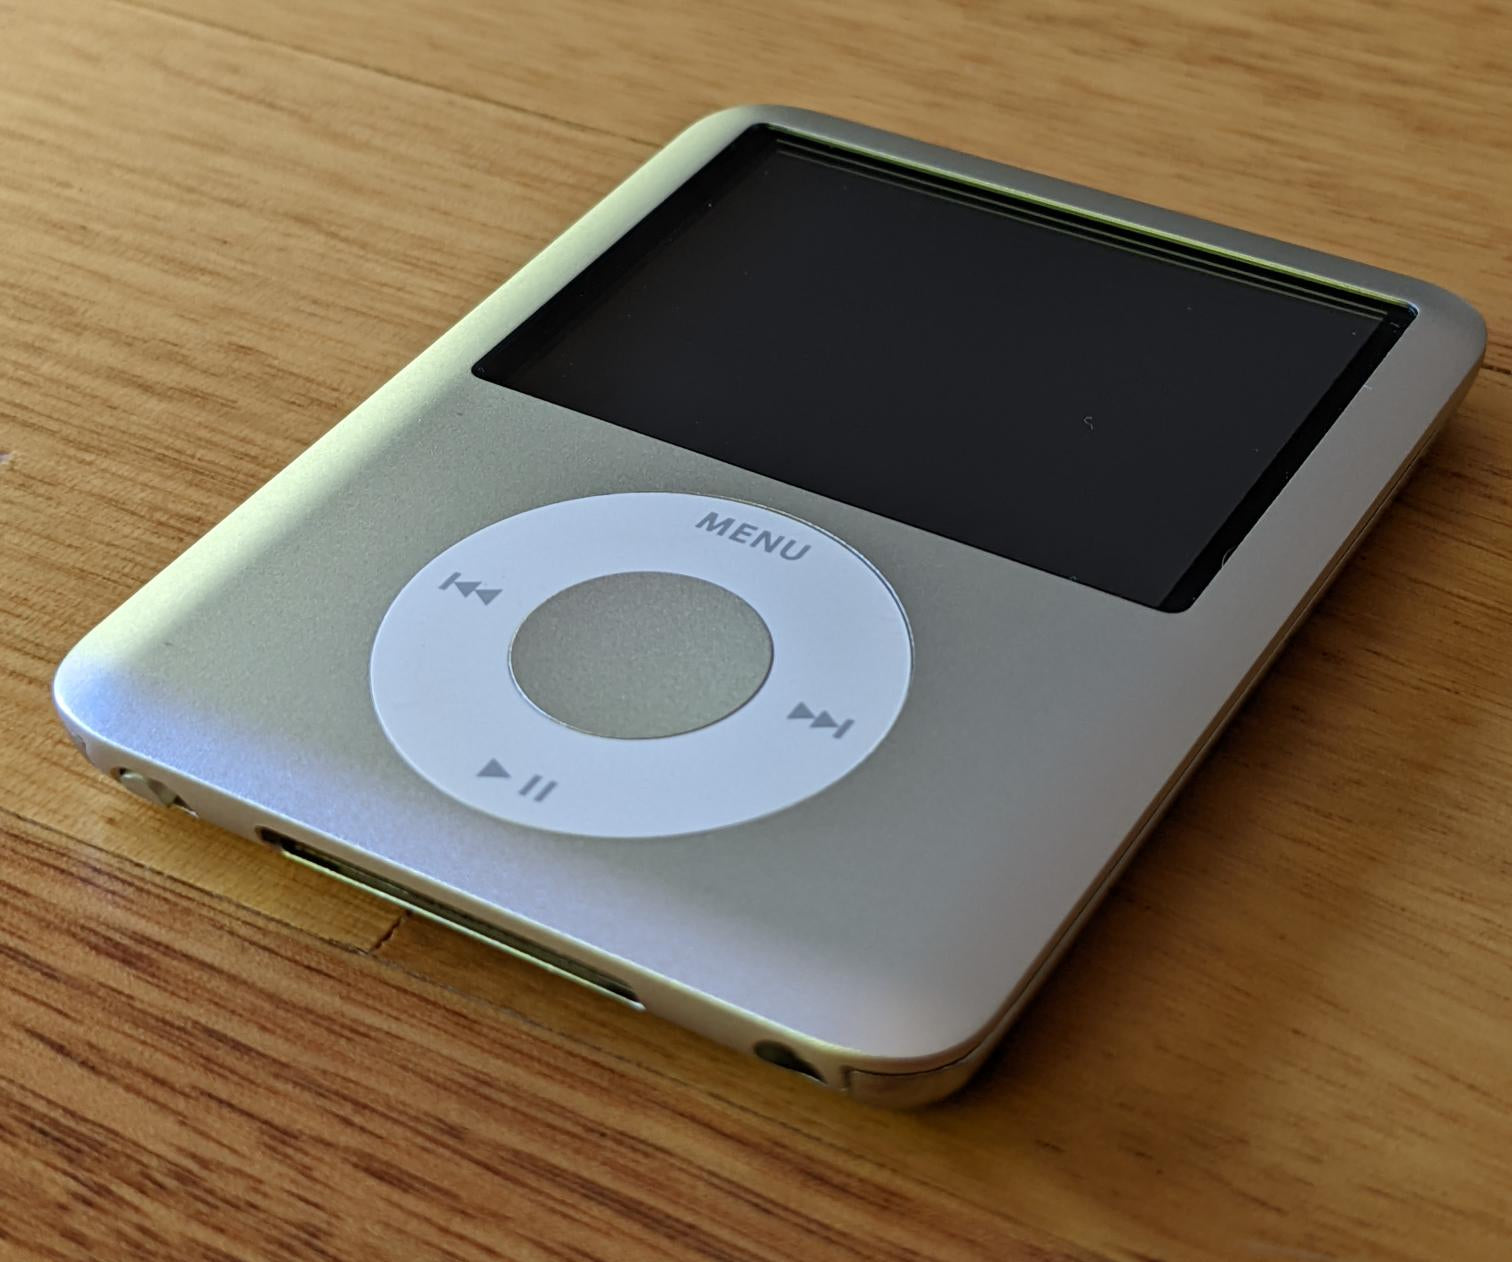 iPod touch販売終了へ。「iPod」20年の歴史に幕